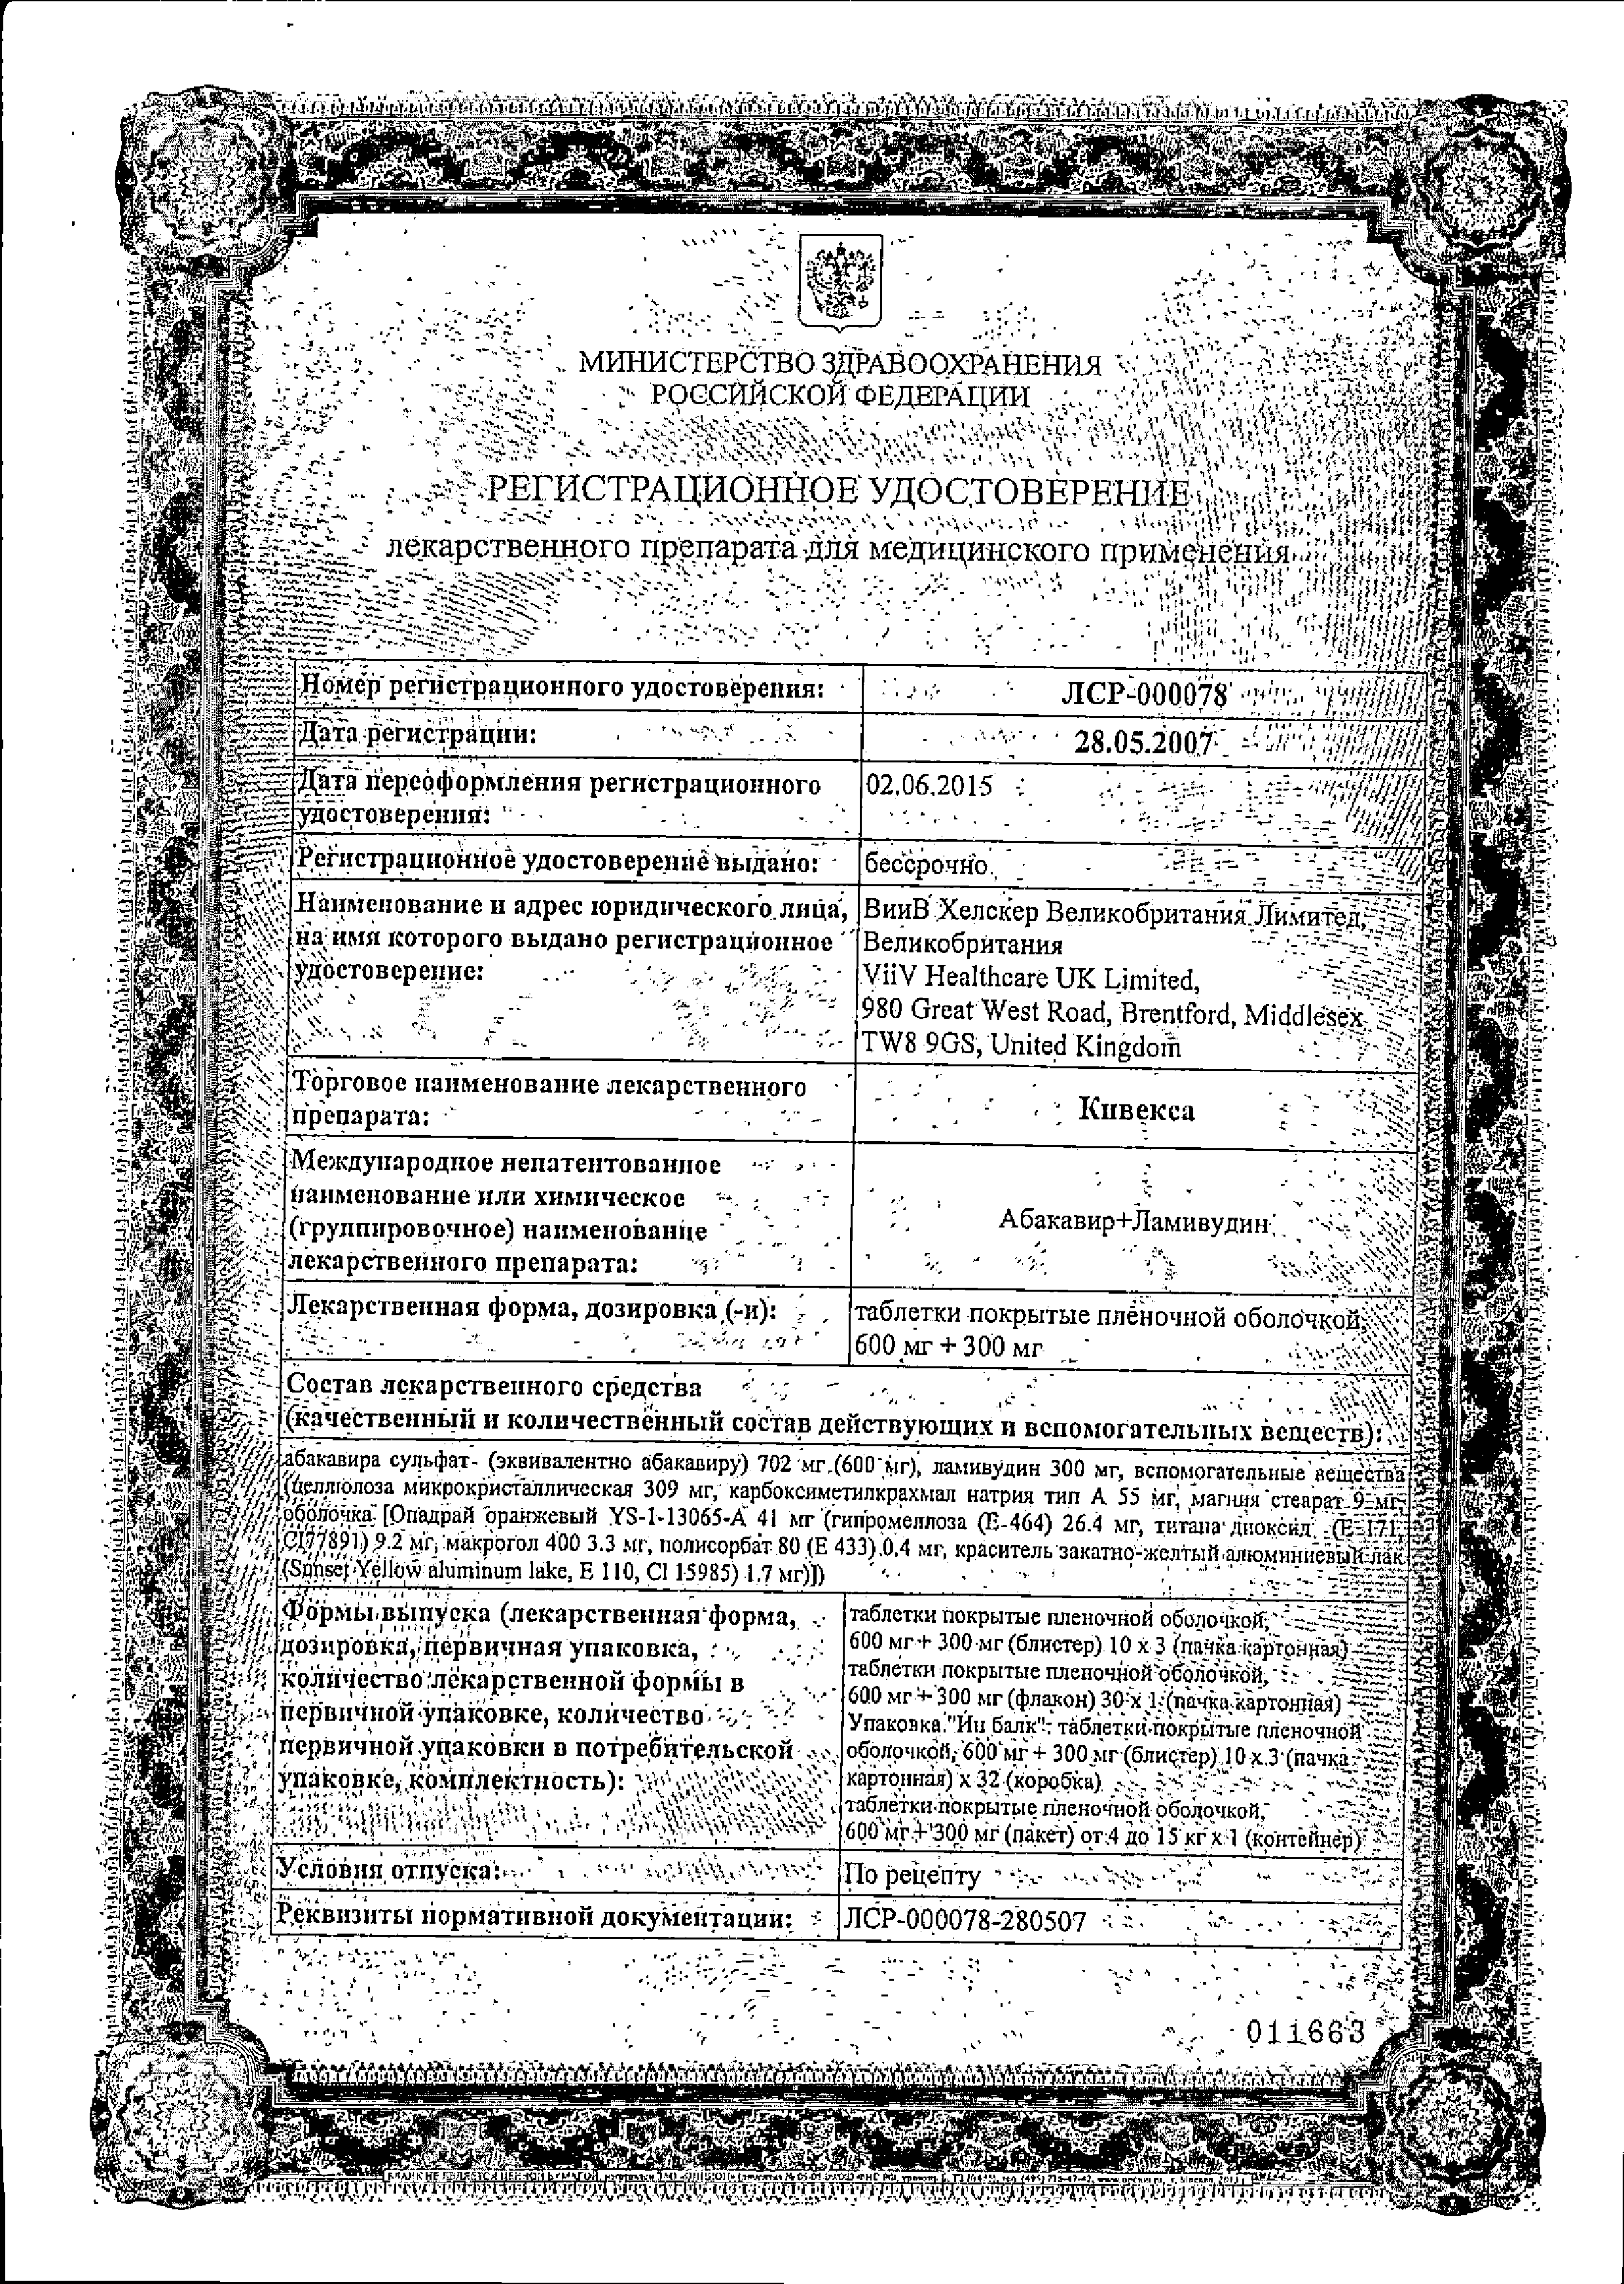 Кивекса сертификат